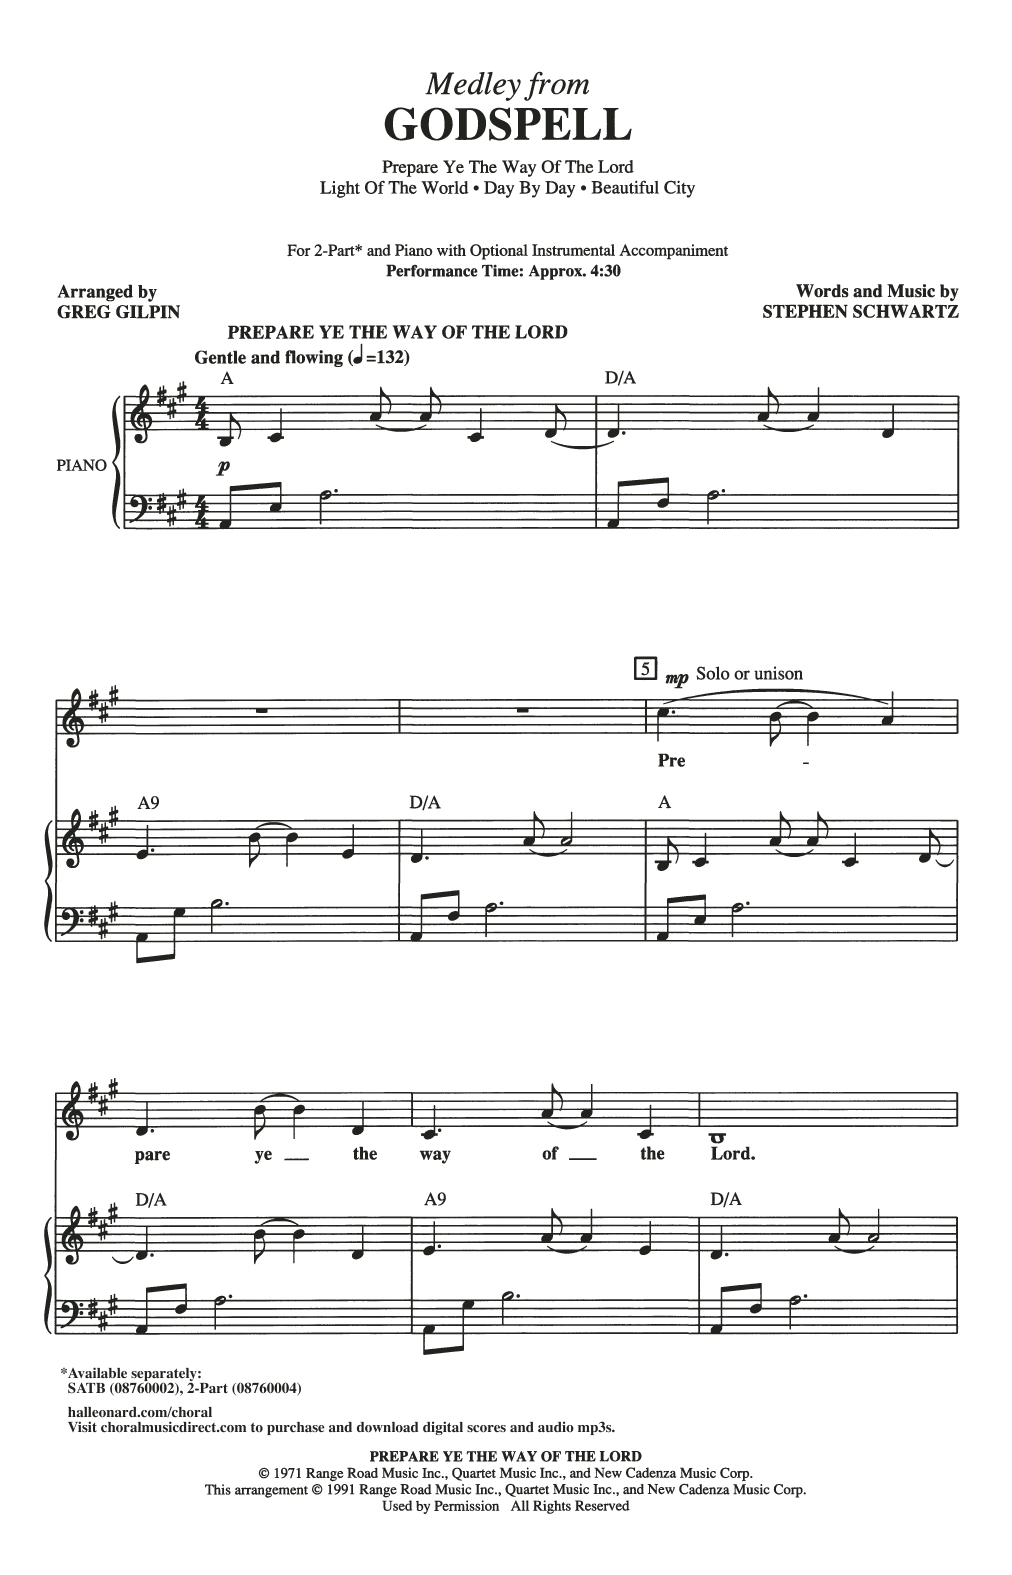 Stephen Schwartz Godspell Medley (arr. Greg Gilpin) sheet music notes and chords arranged for 2-Part Choir